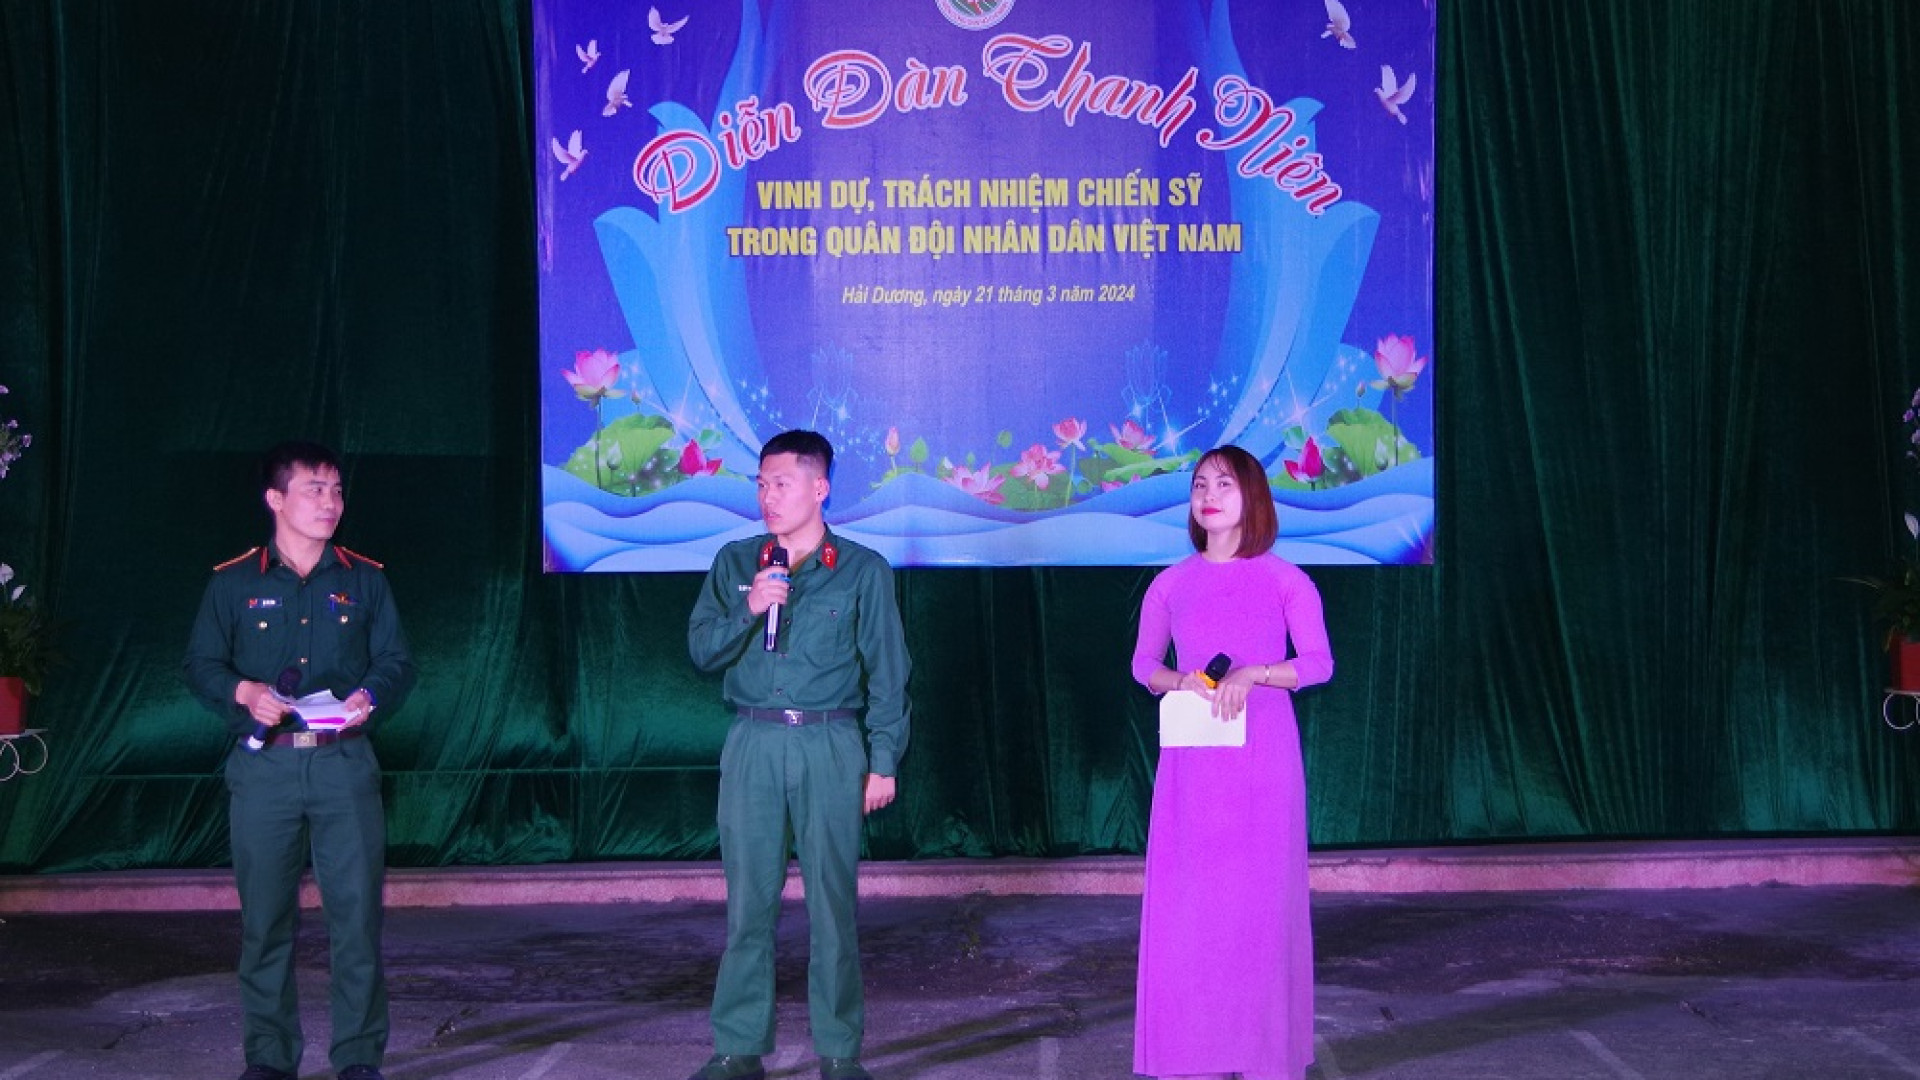 Chi đoàn Đại đội 5, Đoàn cơ sở Tiểu đoàn 3 (Trường Quân sự Quân khu): Tổ chức diễn đàn thanh niên “Vinh dự, trách nhiệm chiến sỹ trong Quân đội nhân dân Việt Nam”